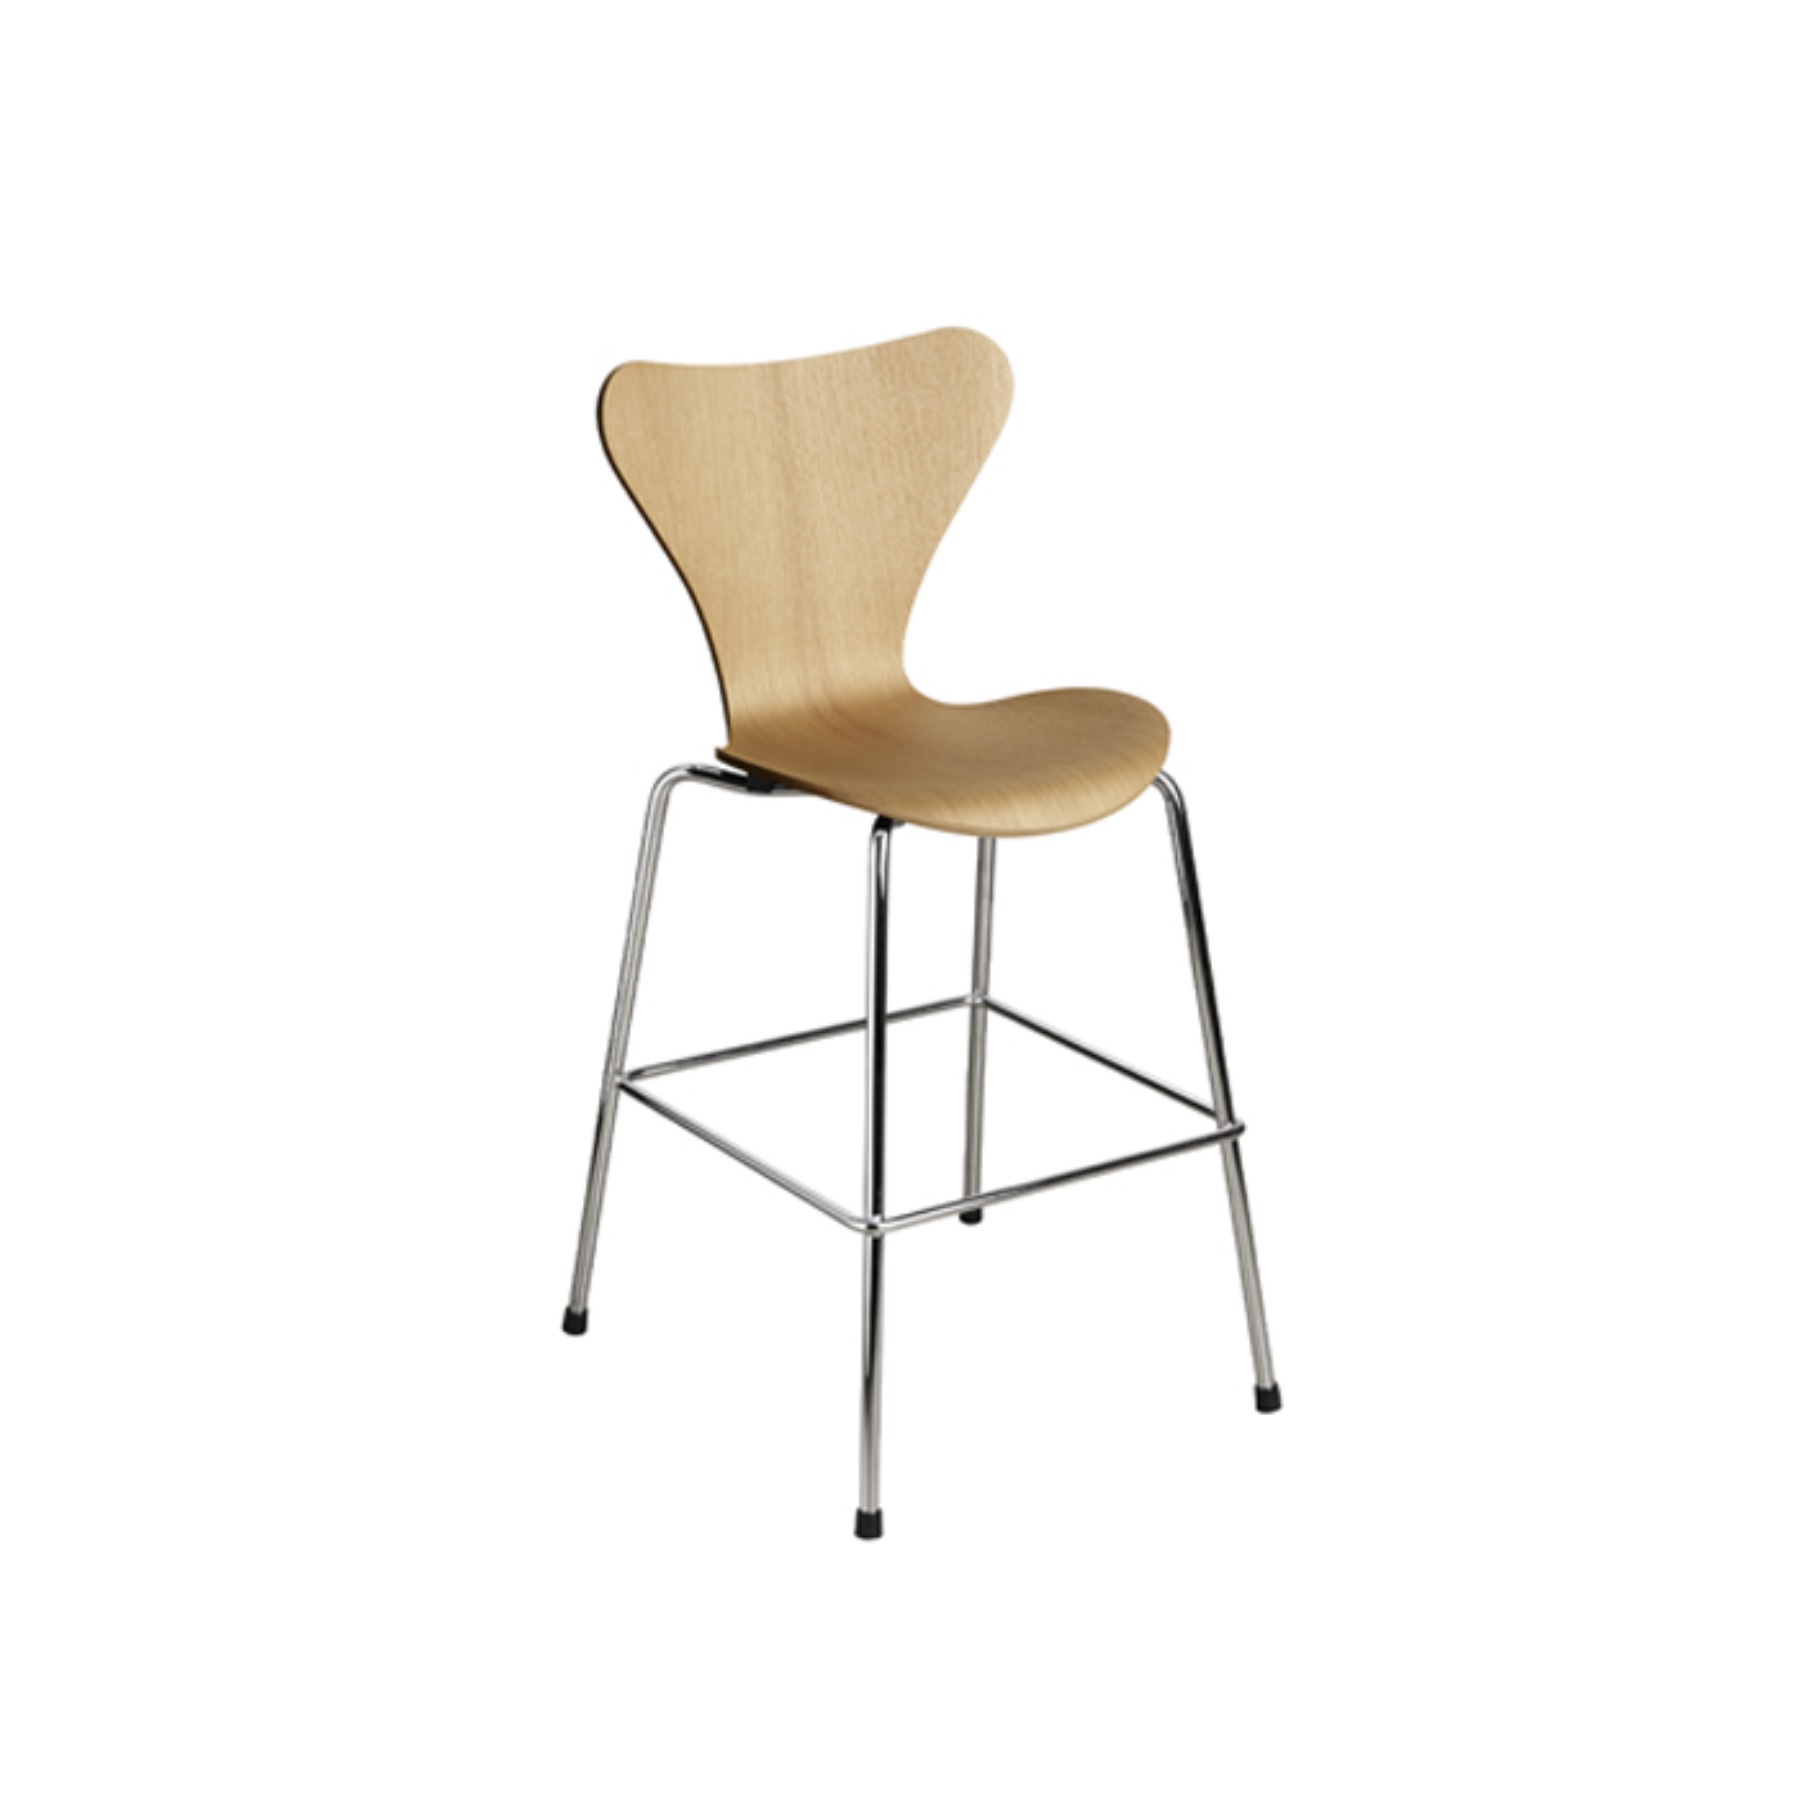 Series 7™ Junior Chair (Oak) 시리즈 세븐 주니어 체어